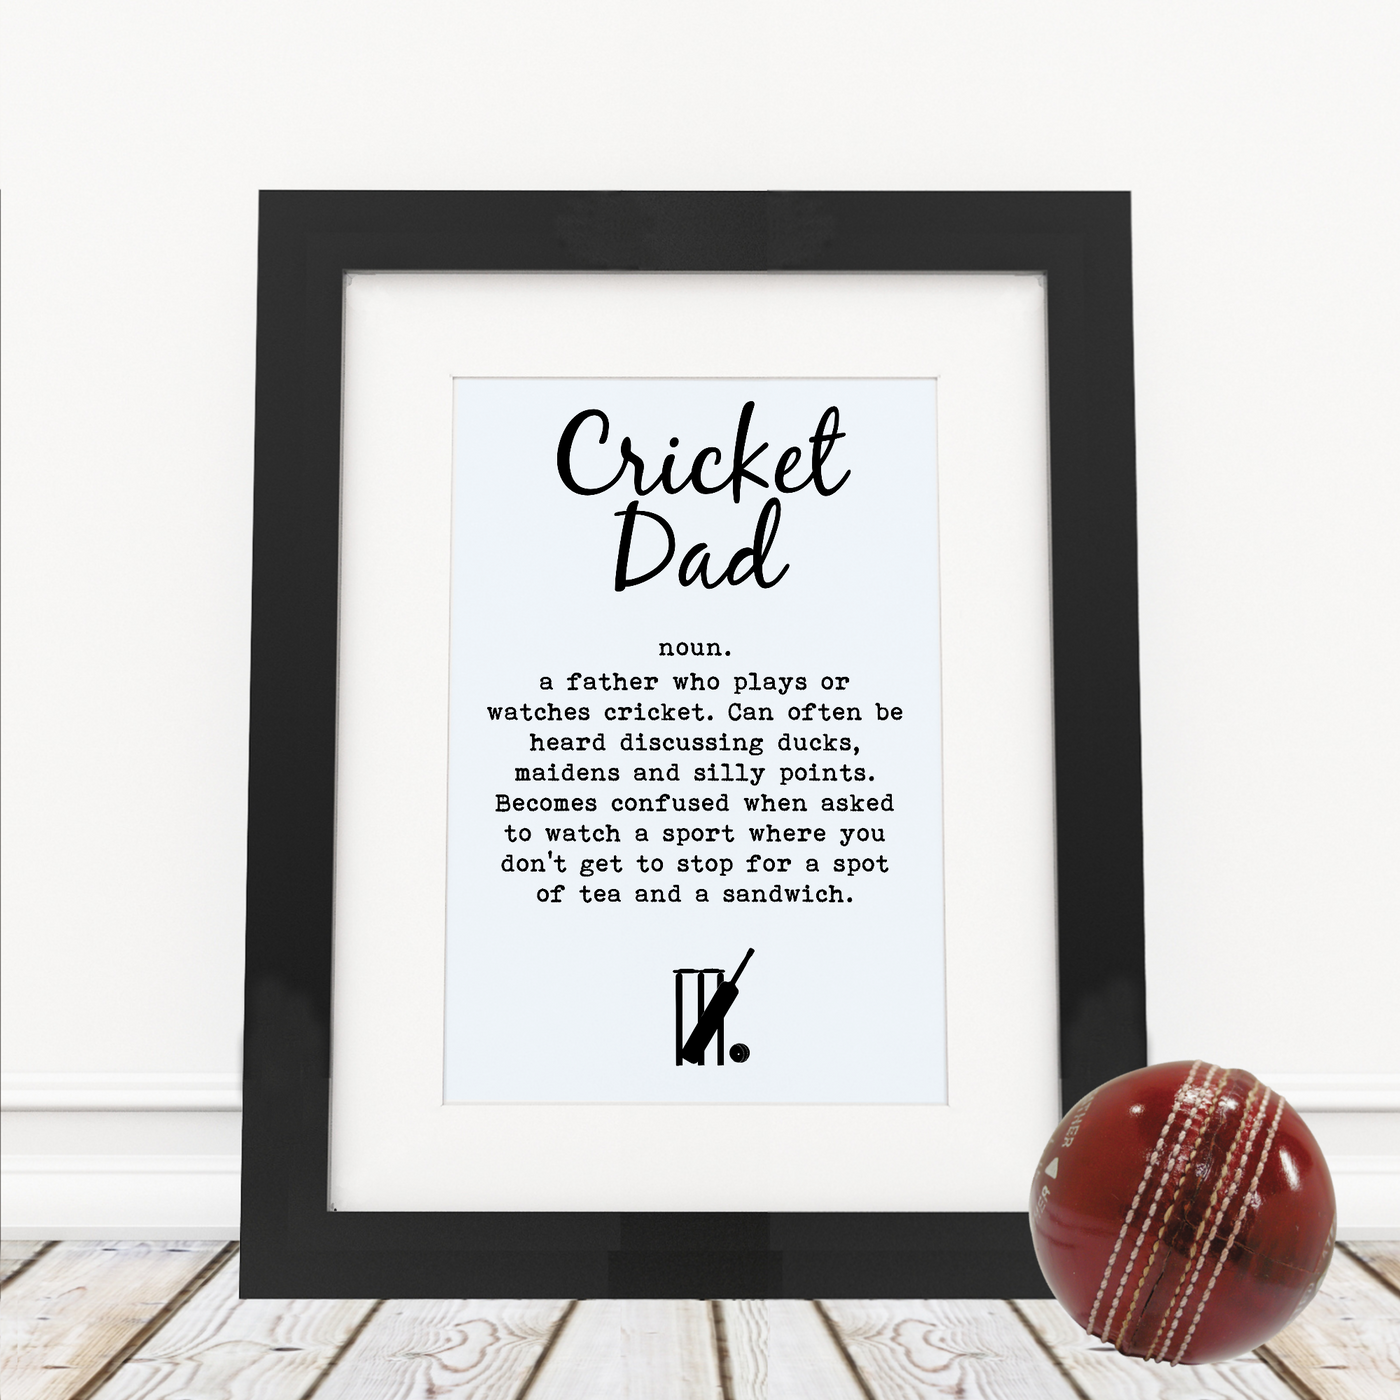 Cricket Dad - Framed Print